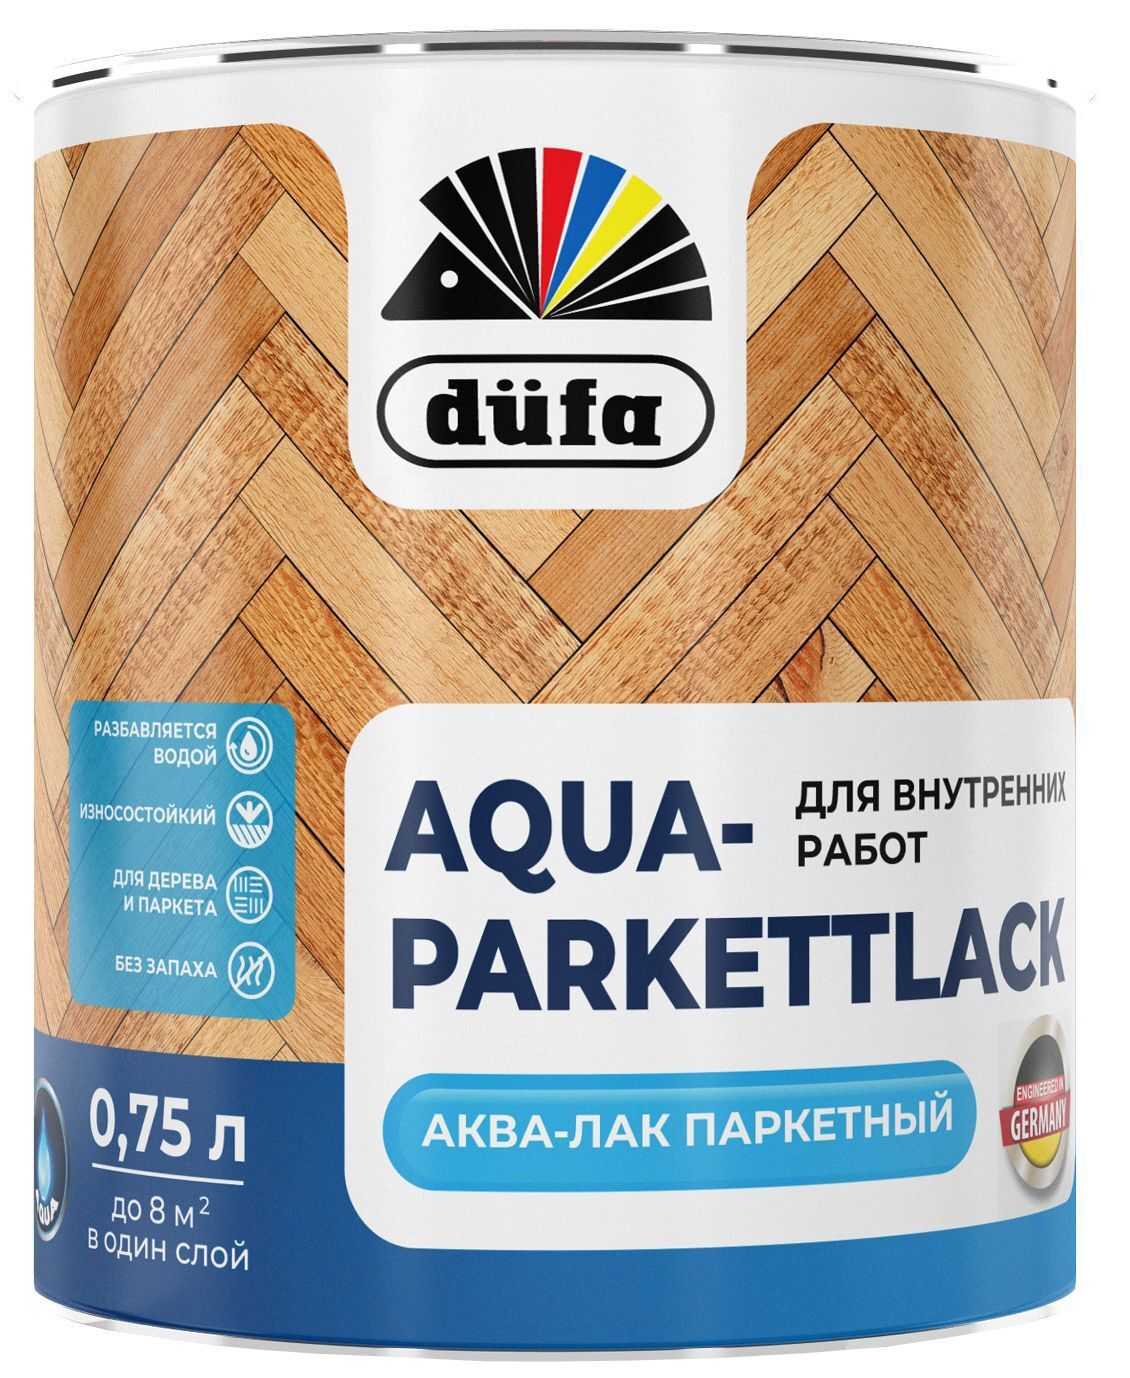  паркетный Dufa Aqua-Parkettlack глянцевый прозрачный 0.75 л по цене .